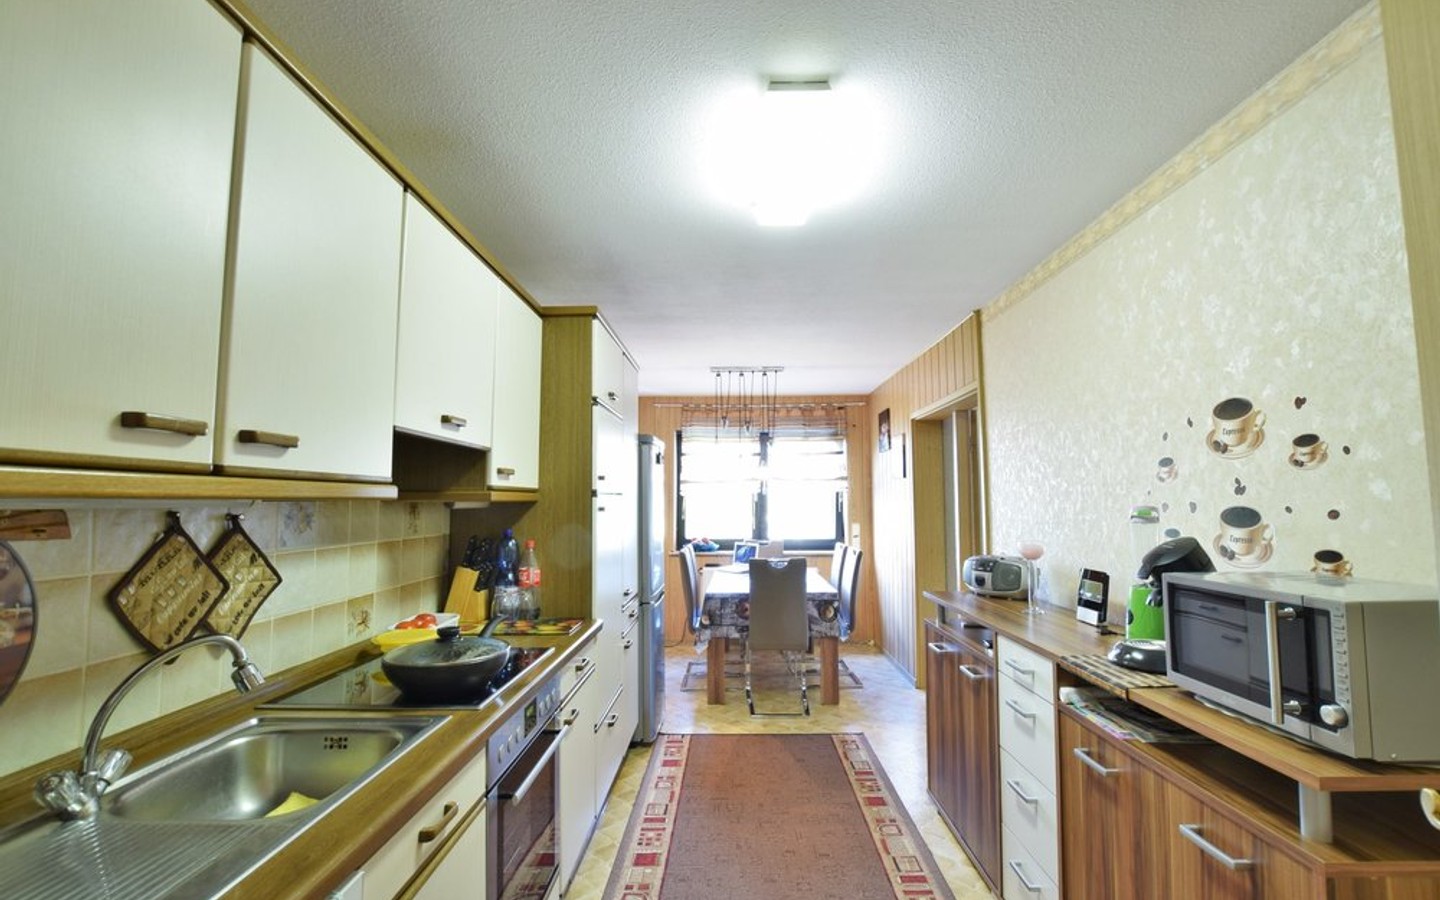 Küche mit Essbereich - Kapitalanleger aufgepasst: Schöne und großzügige 3,5 Zimmerwohnung (98qm) im Zentrum von Leimen